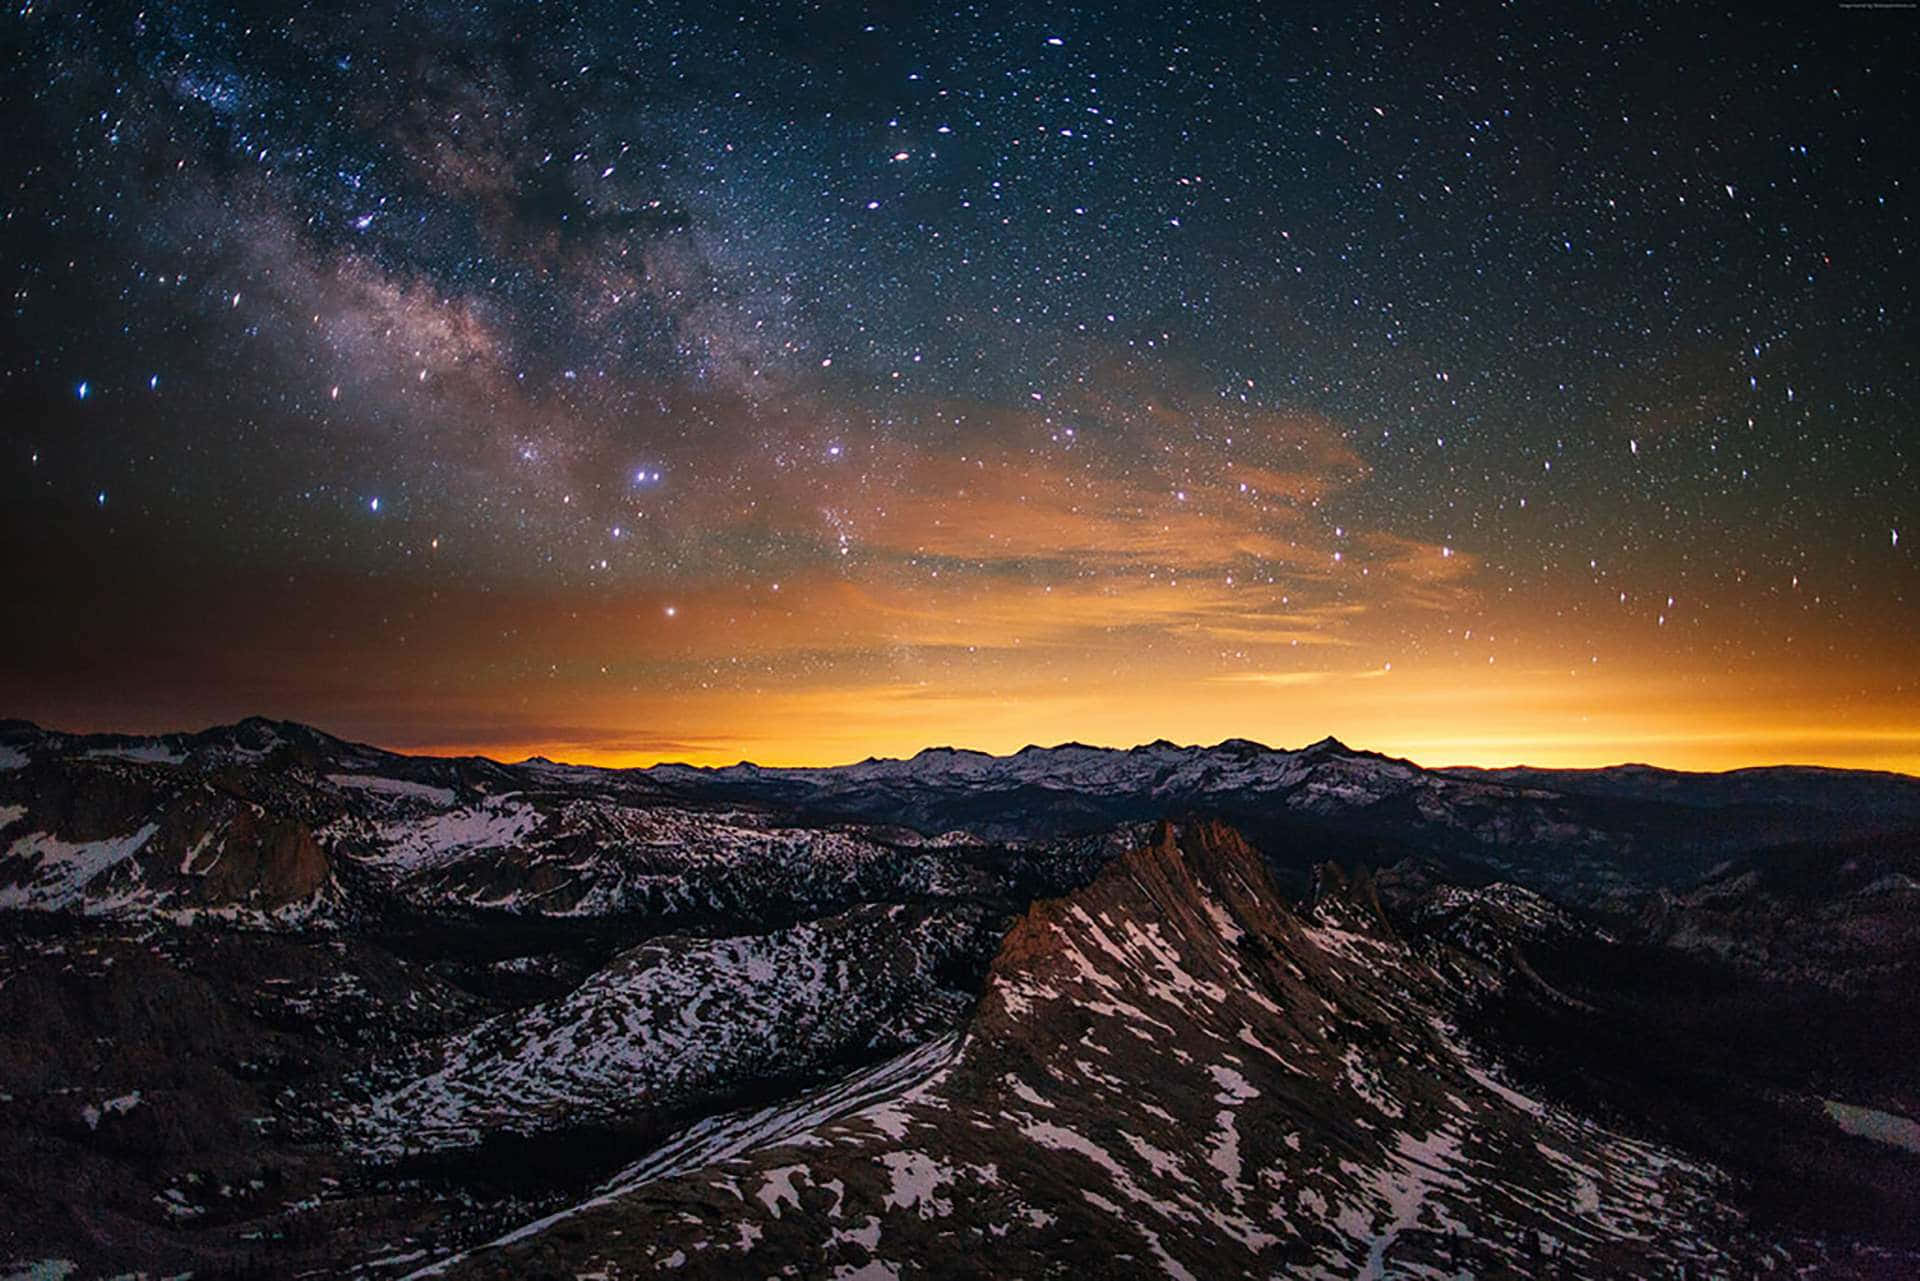 Högupplöstbakgrundsbild Med En Galaxfylld Bergsökningsbild.